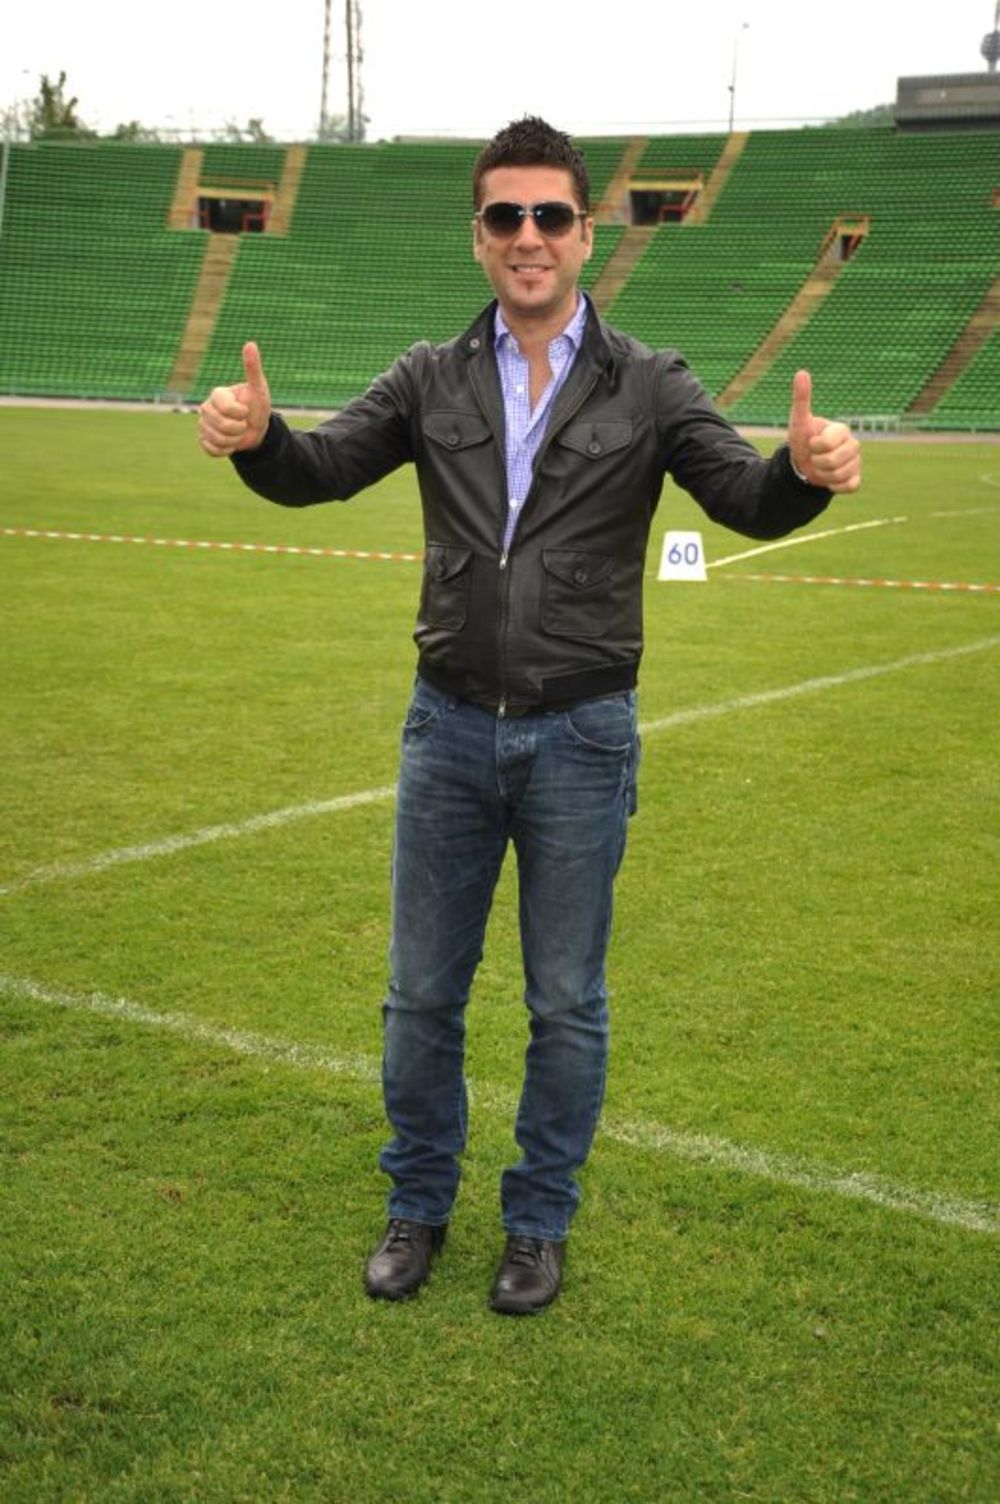 Pop pevač Željko Joksimović obišao je stadion Koševo u Sarajevu gde će 12. juna održati veliki koncert